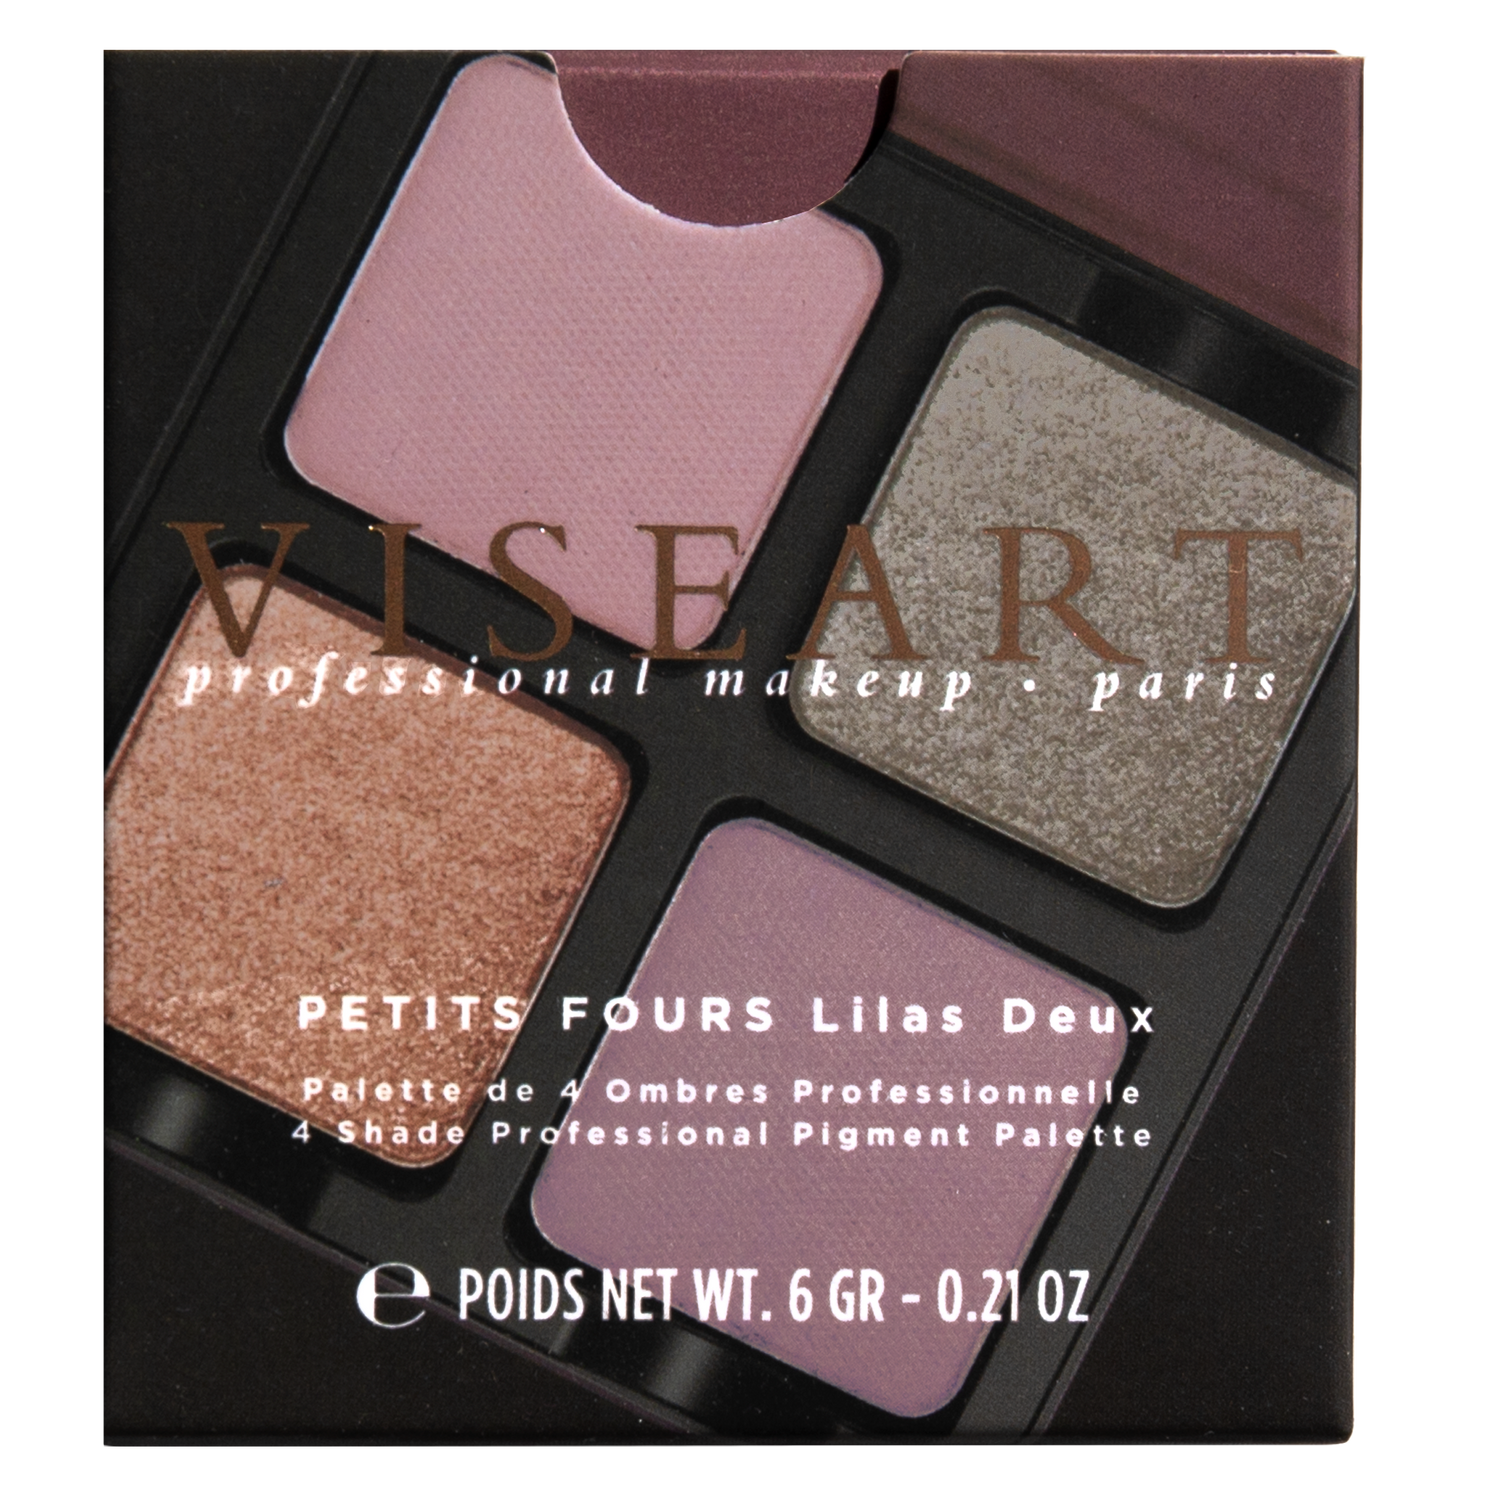 Viseart Paris Petits Fours Lilas Deux Eyeshadow Palette Carton